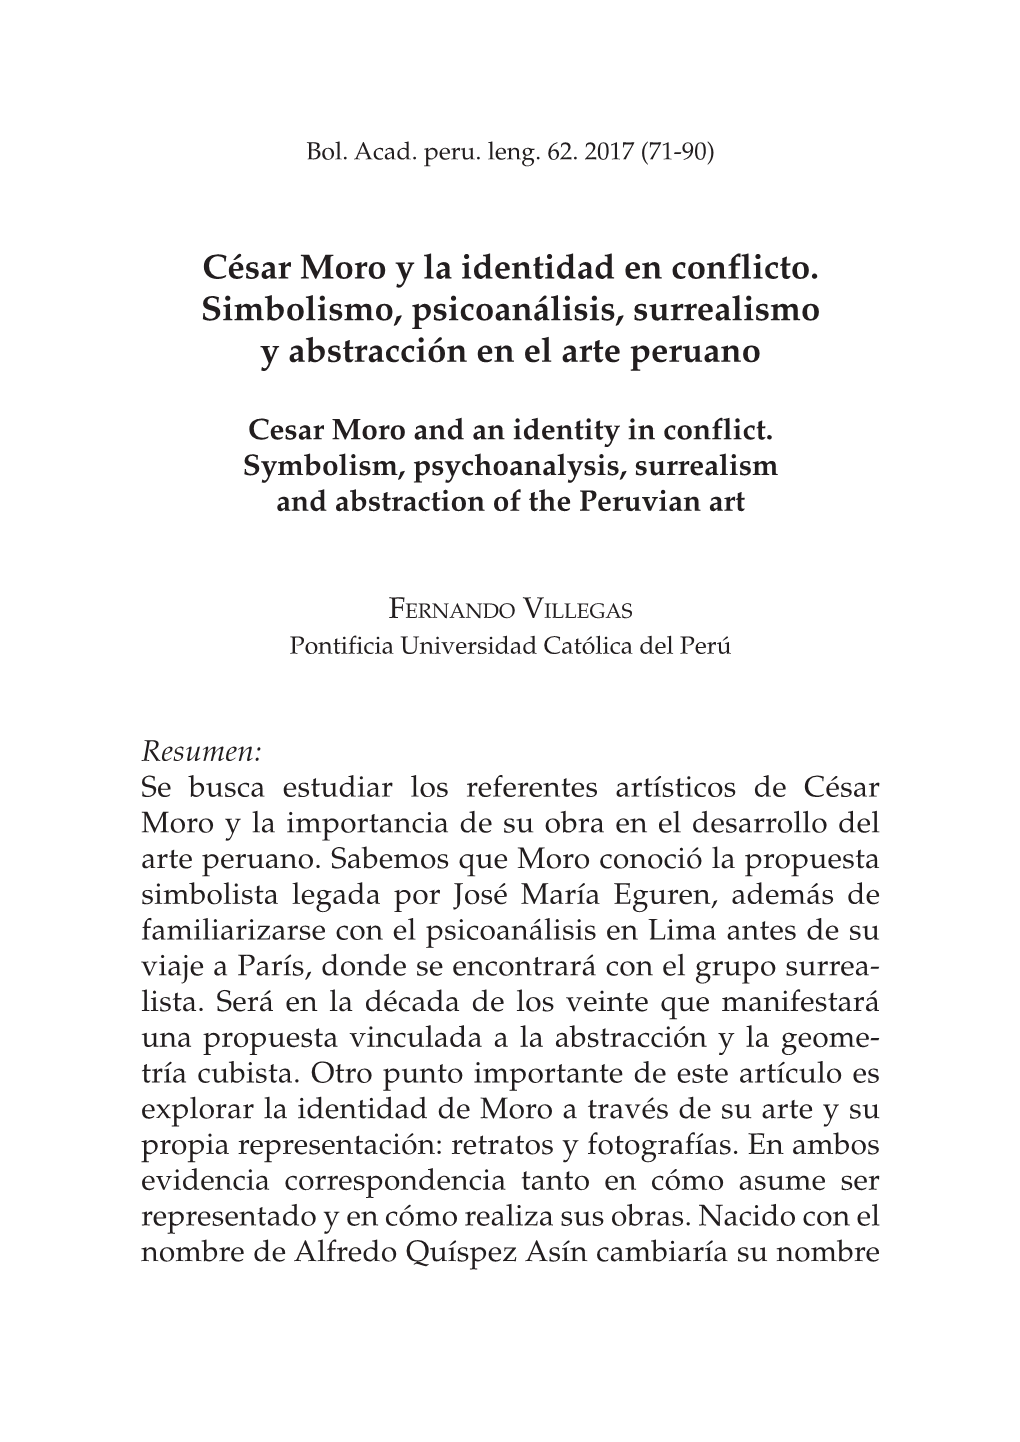 César Moro Y La Identidad En Conflicto. Simbolismo, Psicoanálisis, Surrealismo Y Abstracción En El Arte Peruano